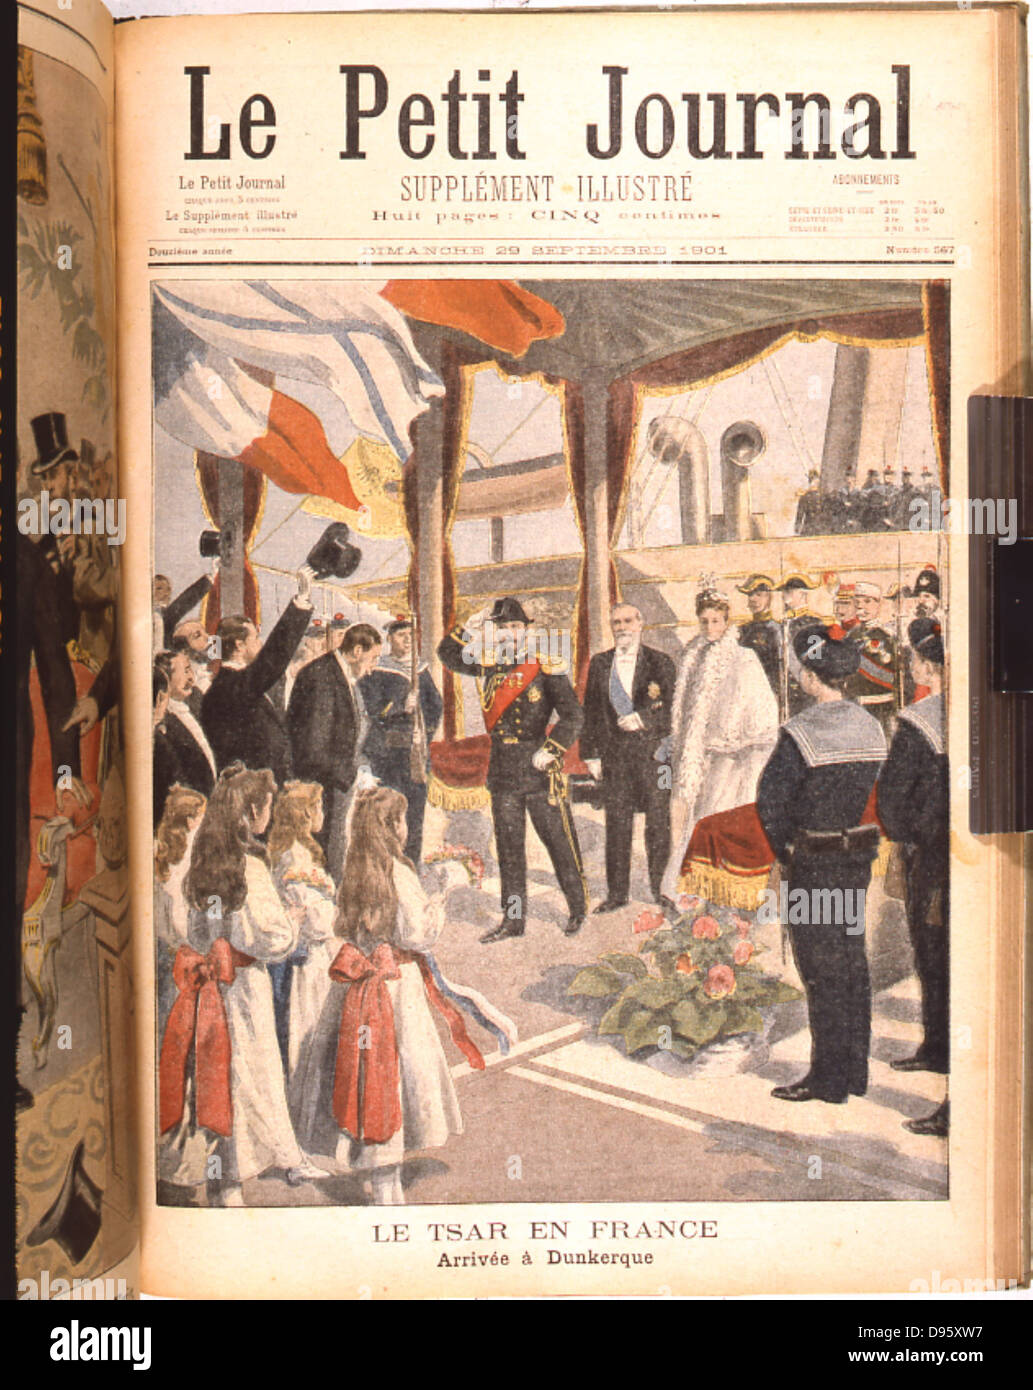 Die russische Außenpolitik. Nikolaus II. (1868-1919) Zar von Russland von 1894, der Ankunft in Cherbourg, Frankreich, auf Staatsbesuch. Von "Le Petit Journal", Paris, 11. Oktober 1896. Stockfoto